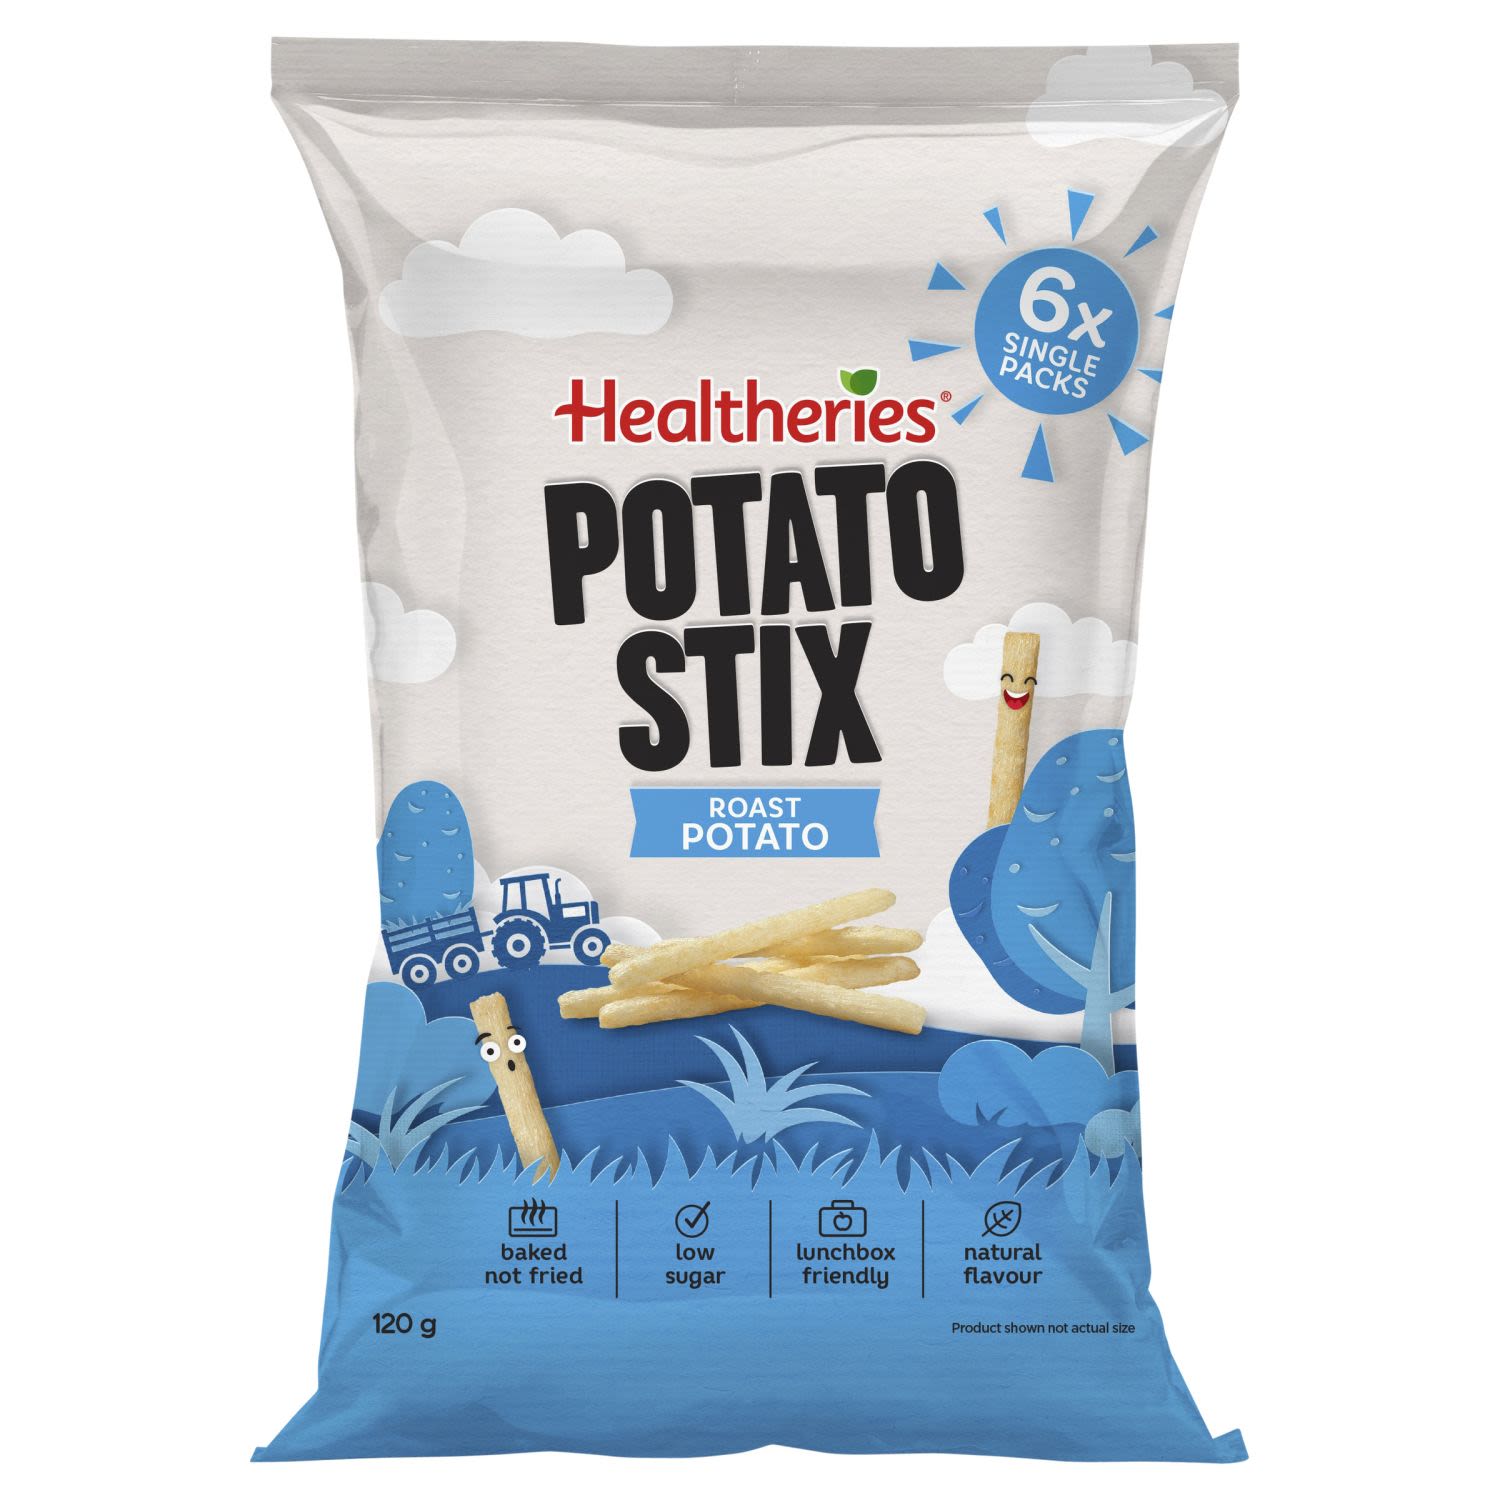 Healtheries Potato Stix Roast Potato Flavour, 6 Each